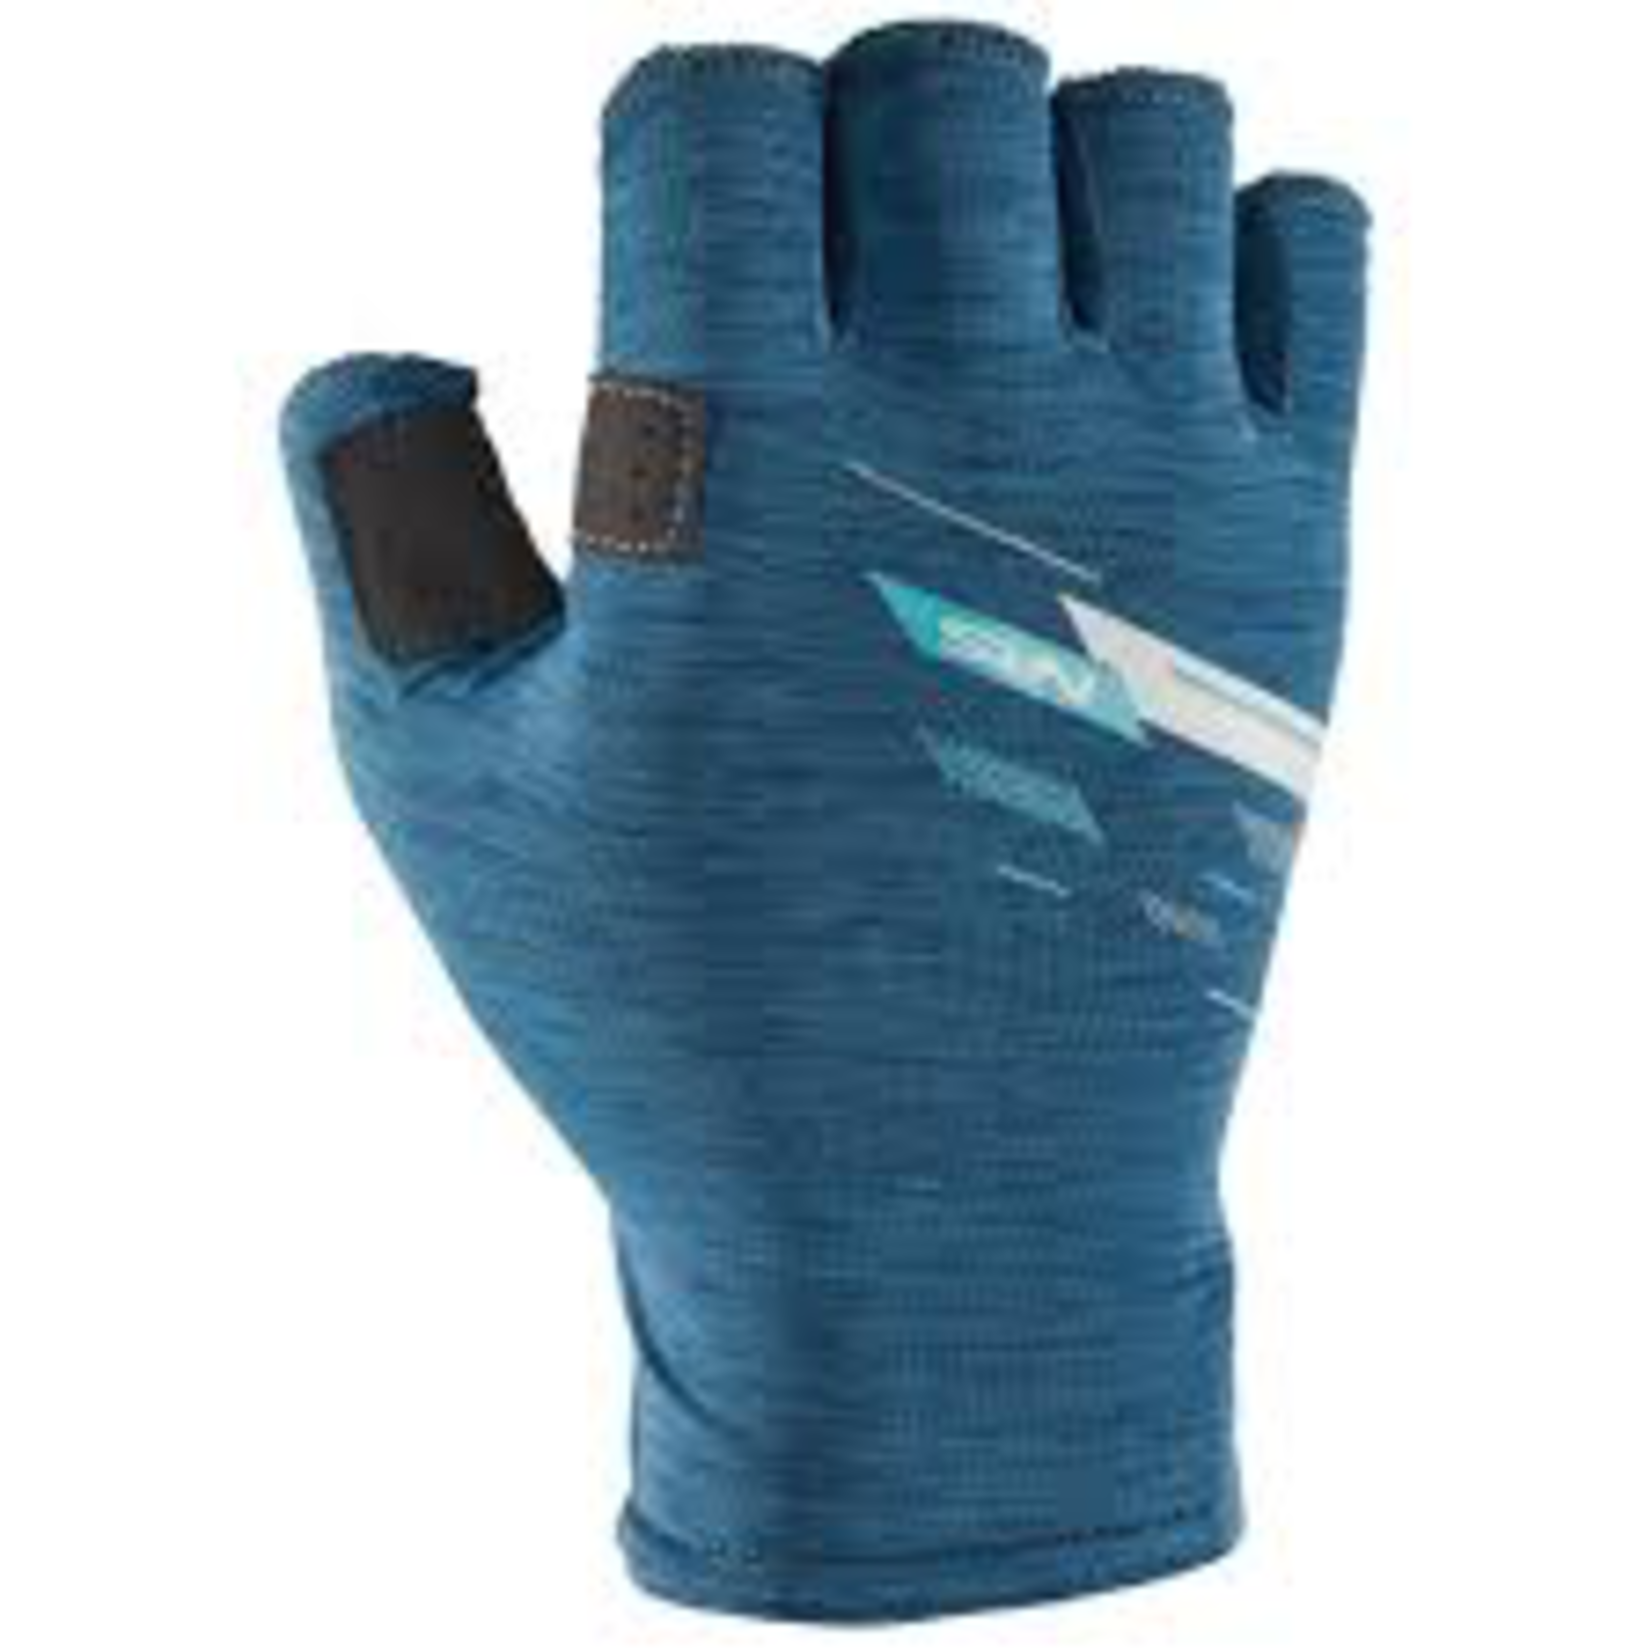 NRS NRS Men’s Boater’s Gloves